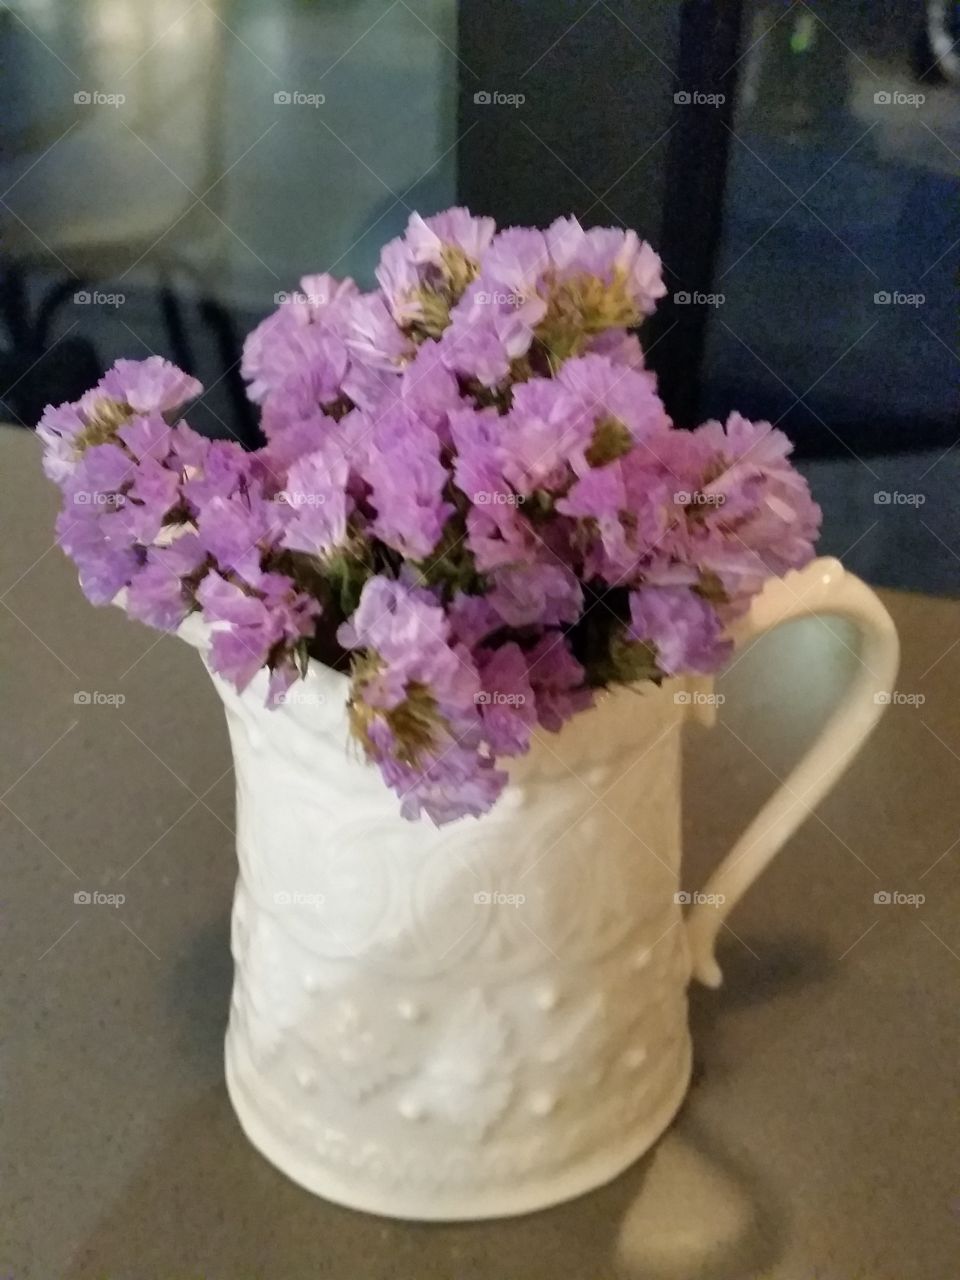 Wild flowers arranged in a milk pitcher